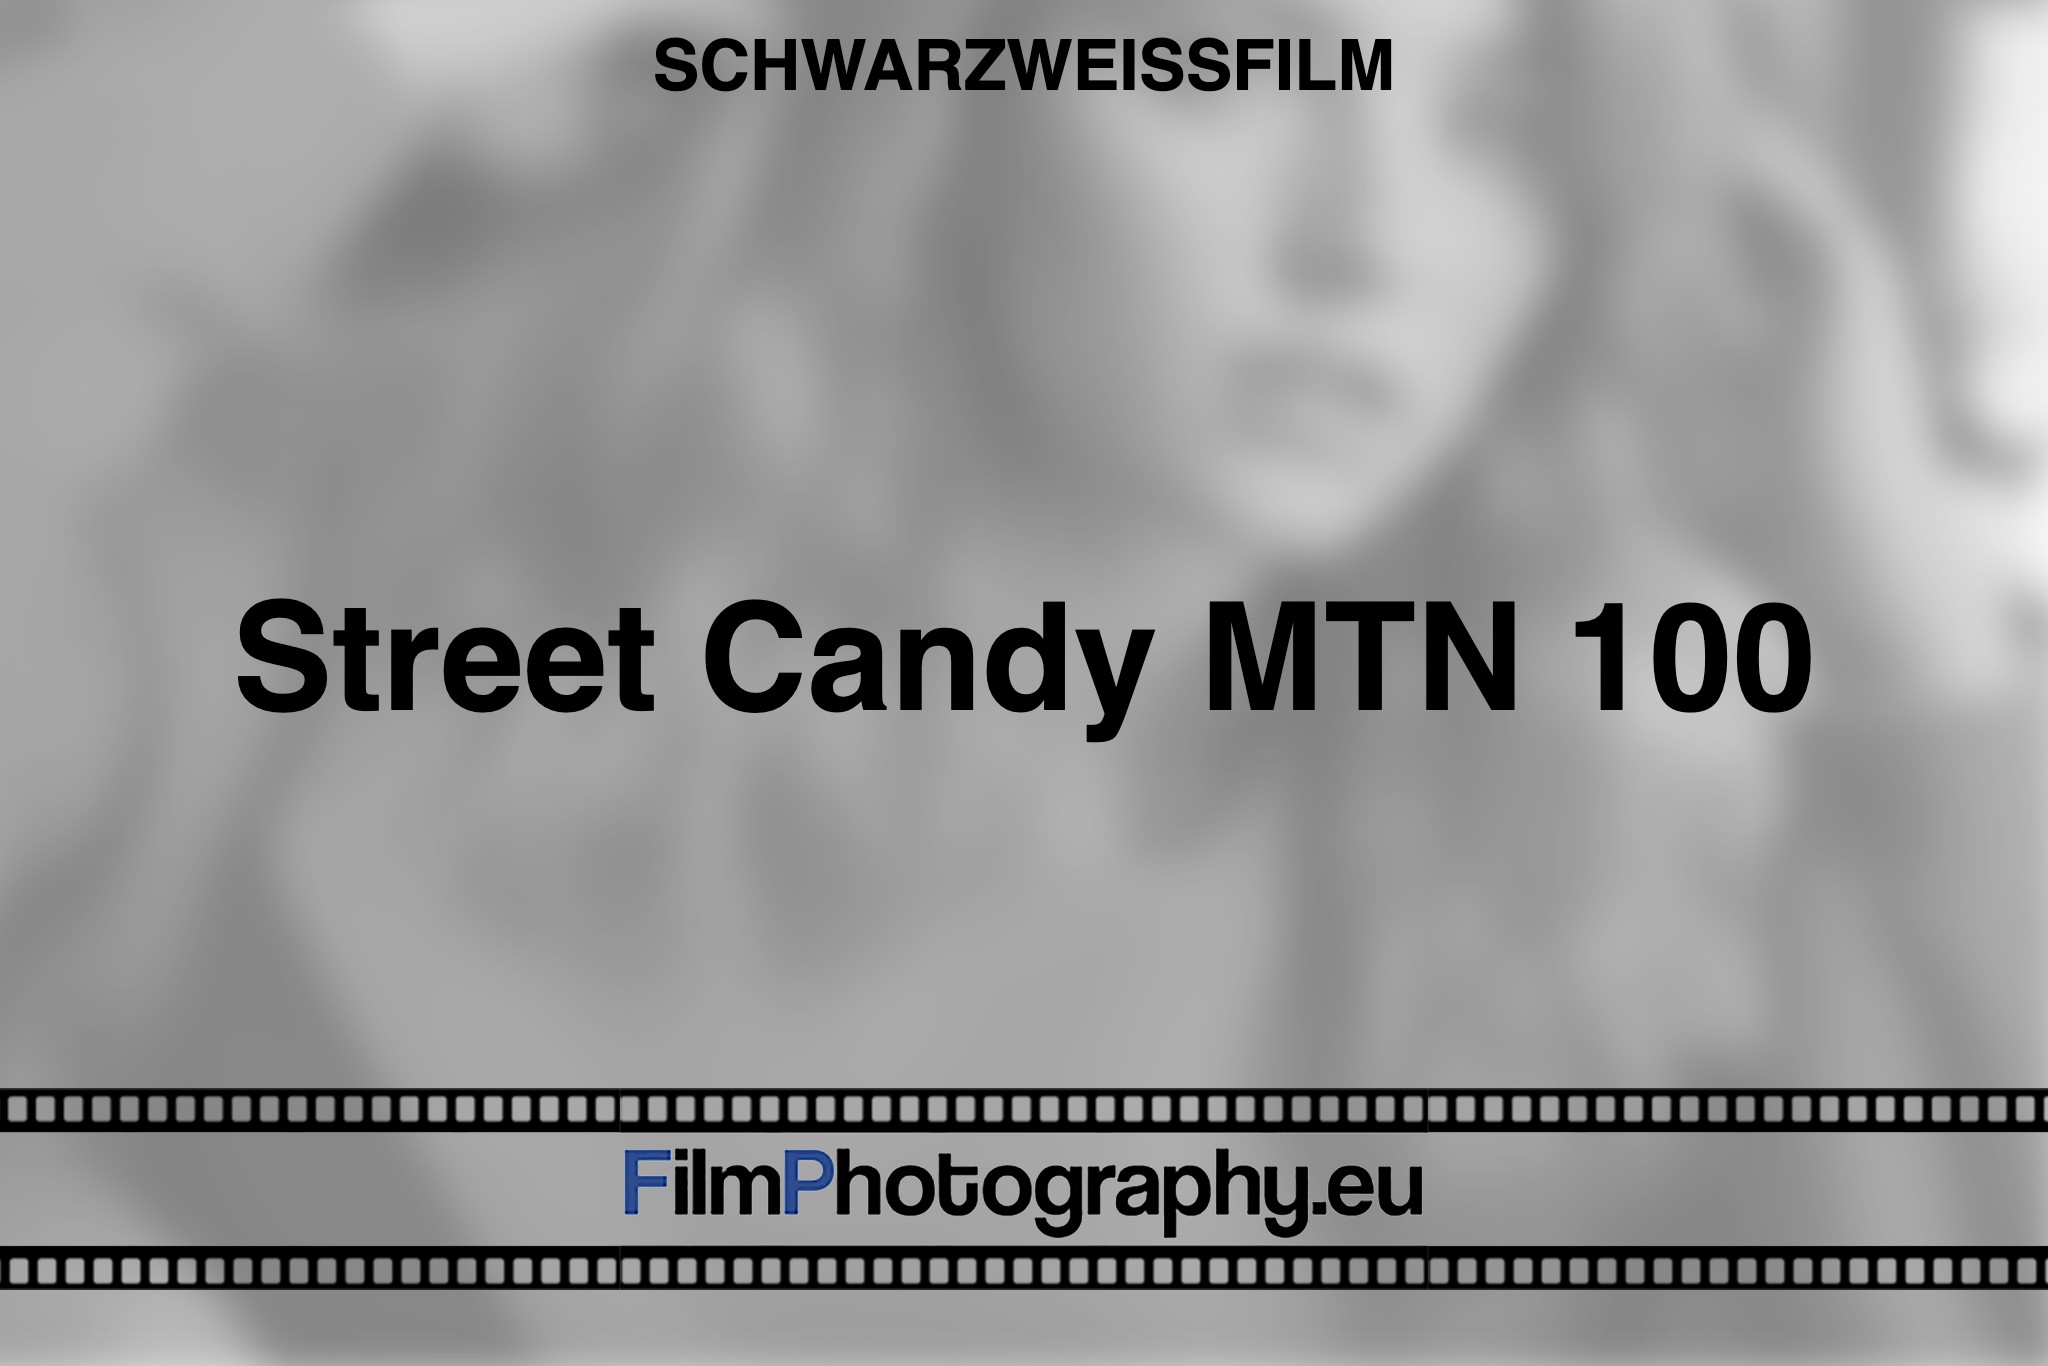 street-candy-mtn-100-schwarzweißfilm-bnv